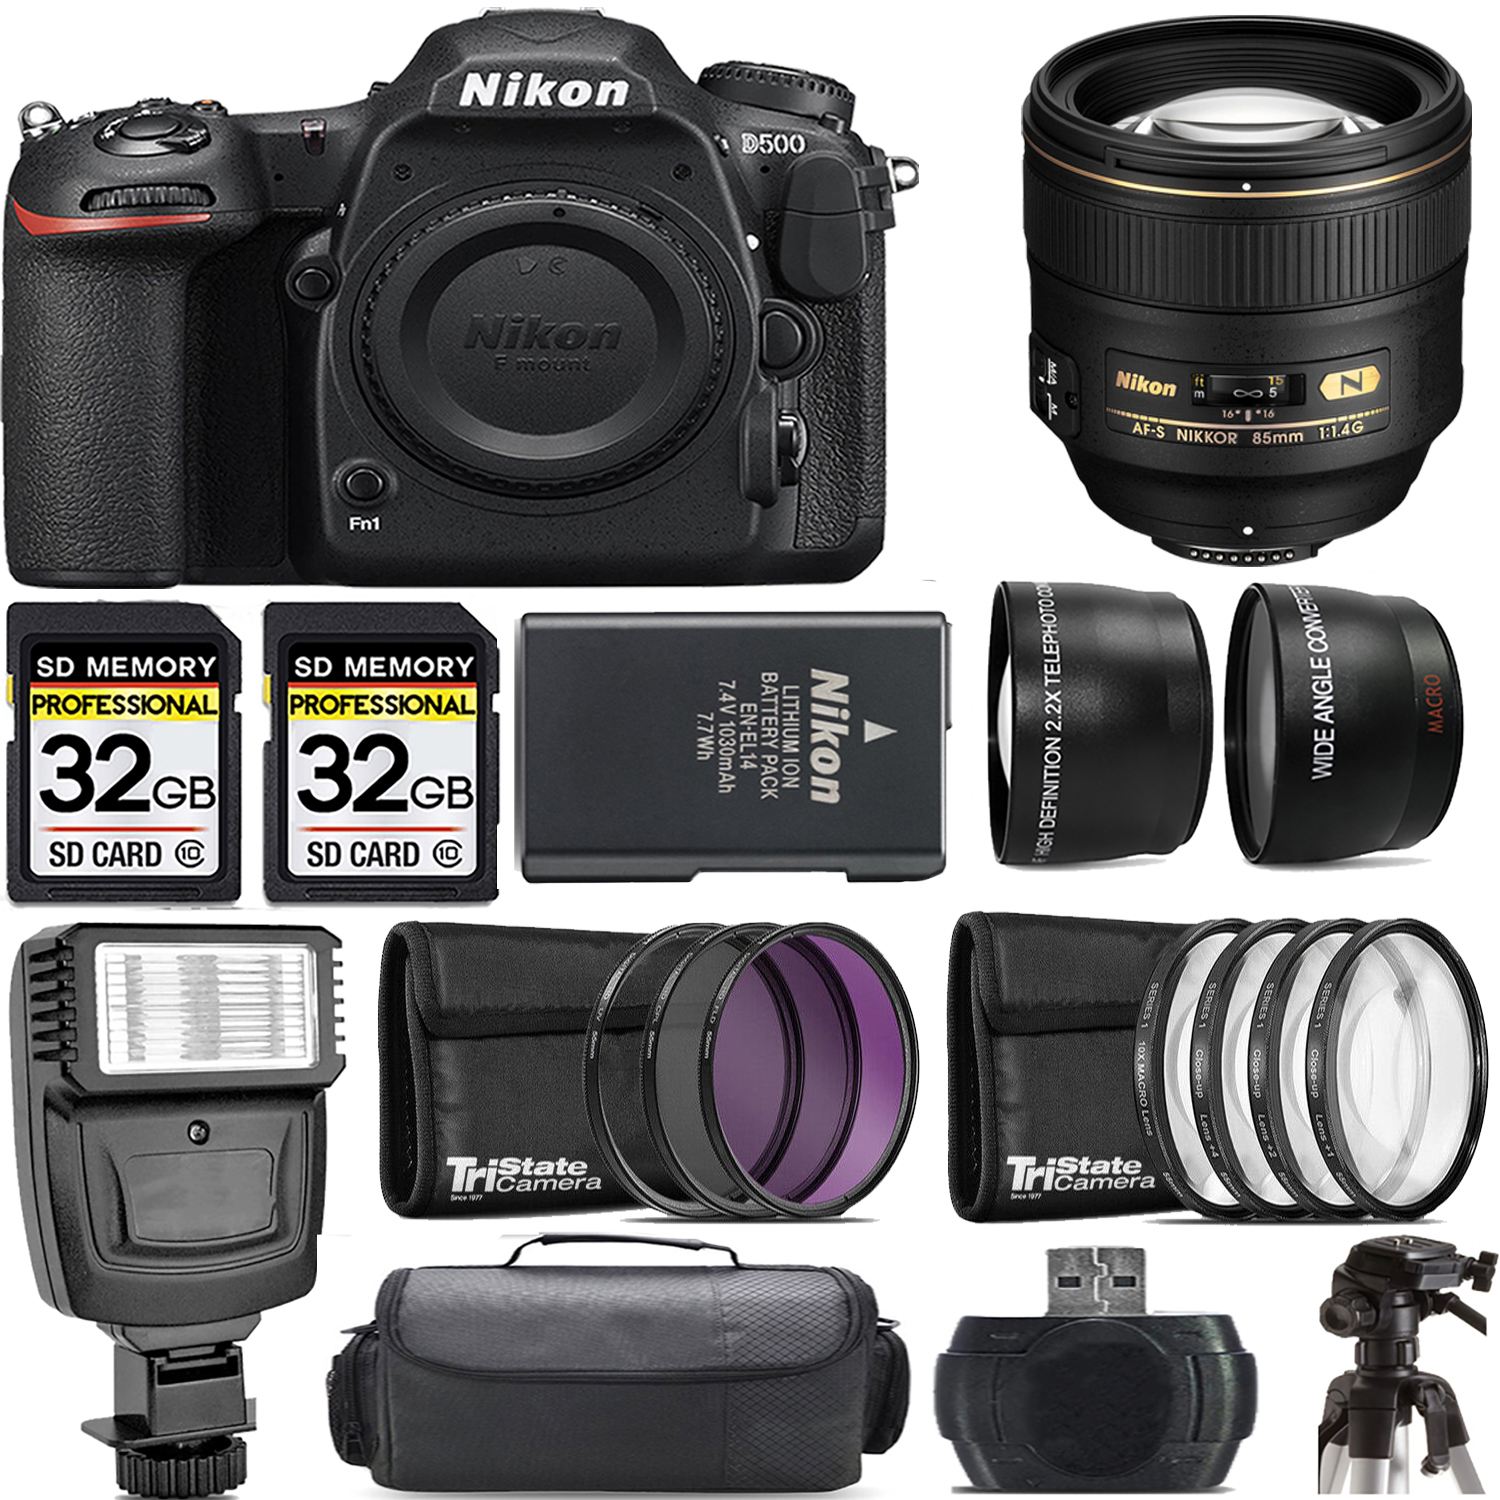 D500 DSLR Camera + 85mm f/1.4G Lens + Flash - Kit *FREE SHIPPING*